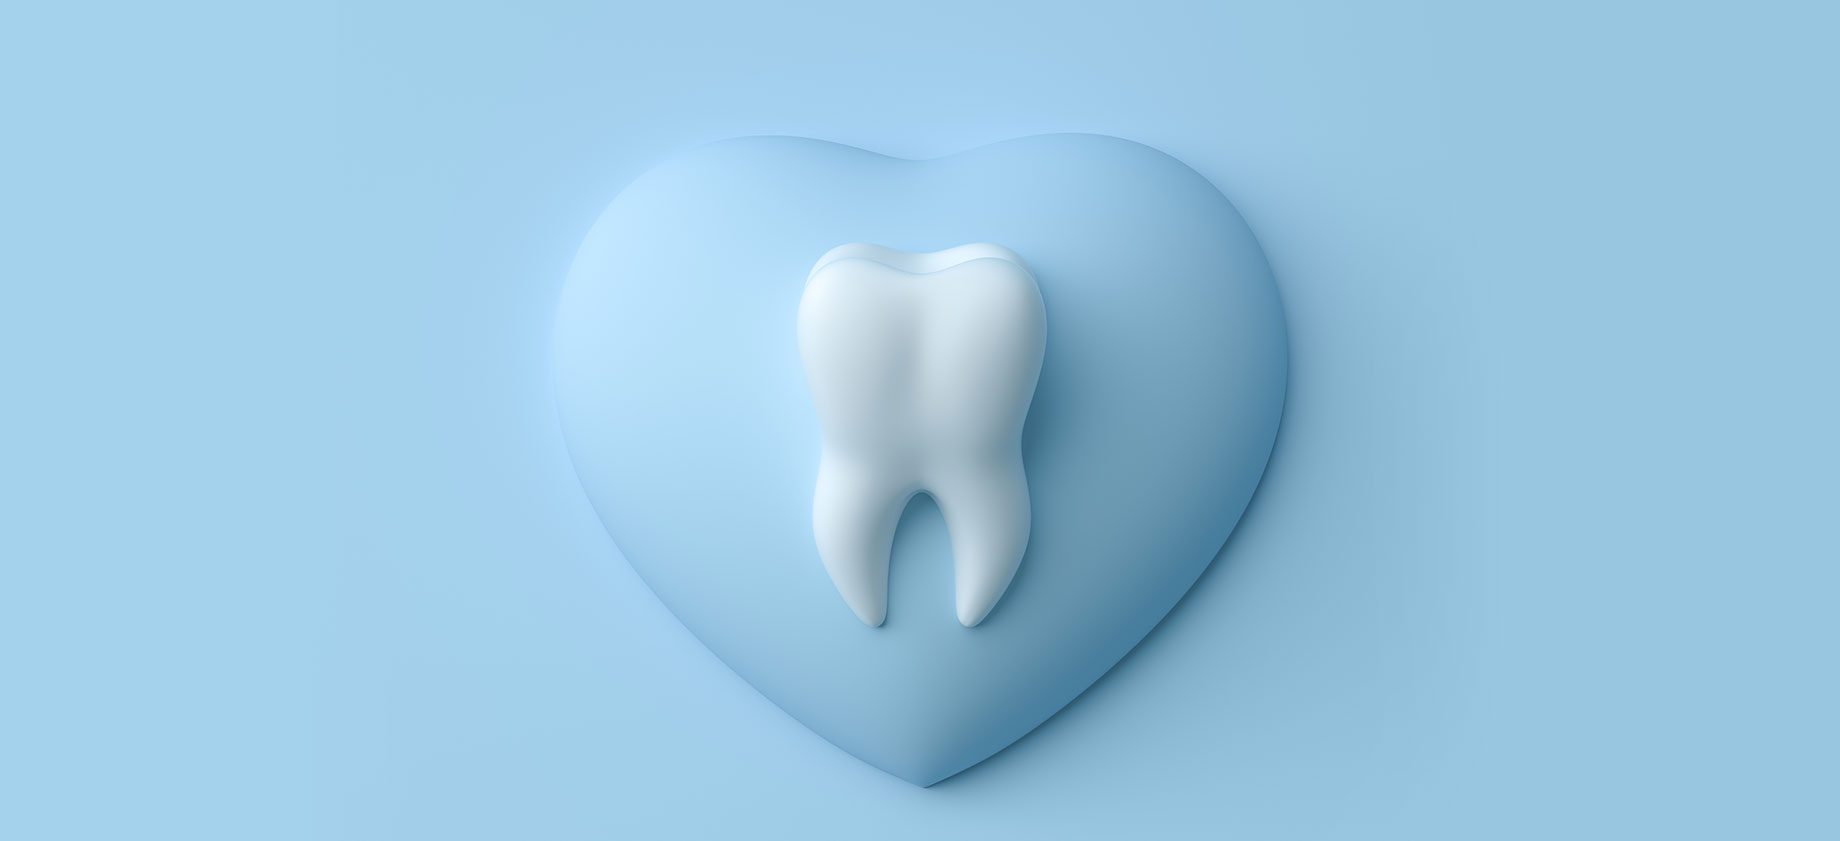 天然の歯を守る「なるべく歯を抜かない治療」